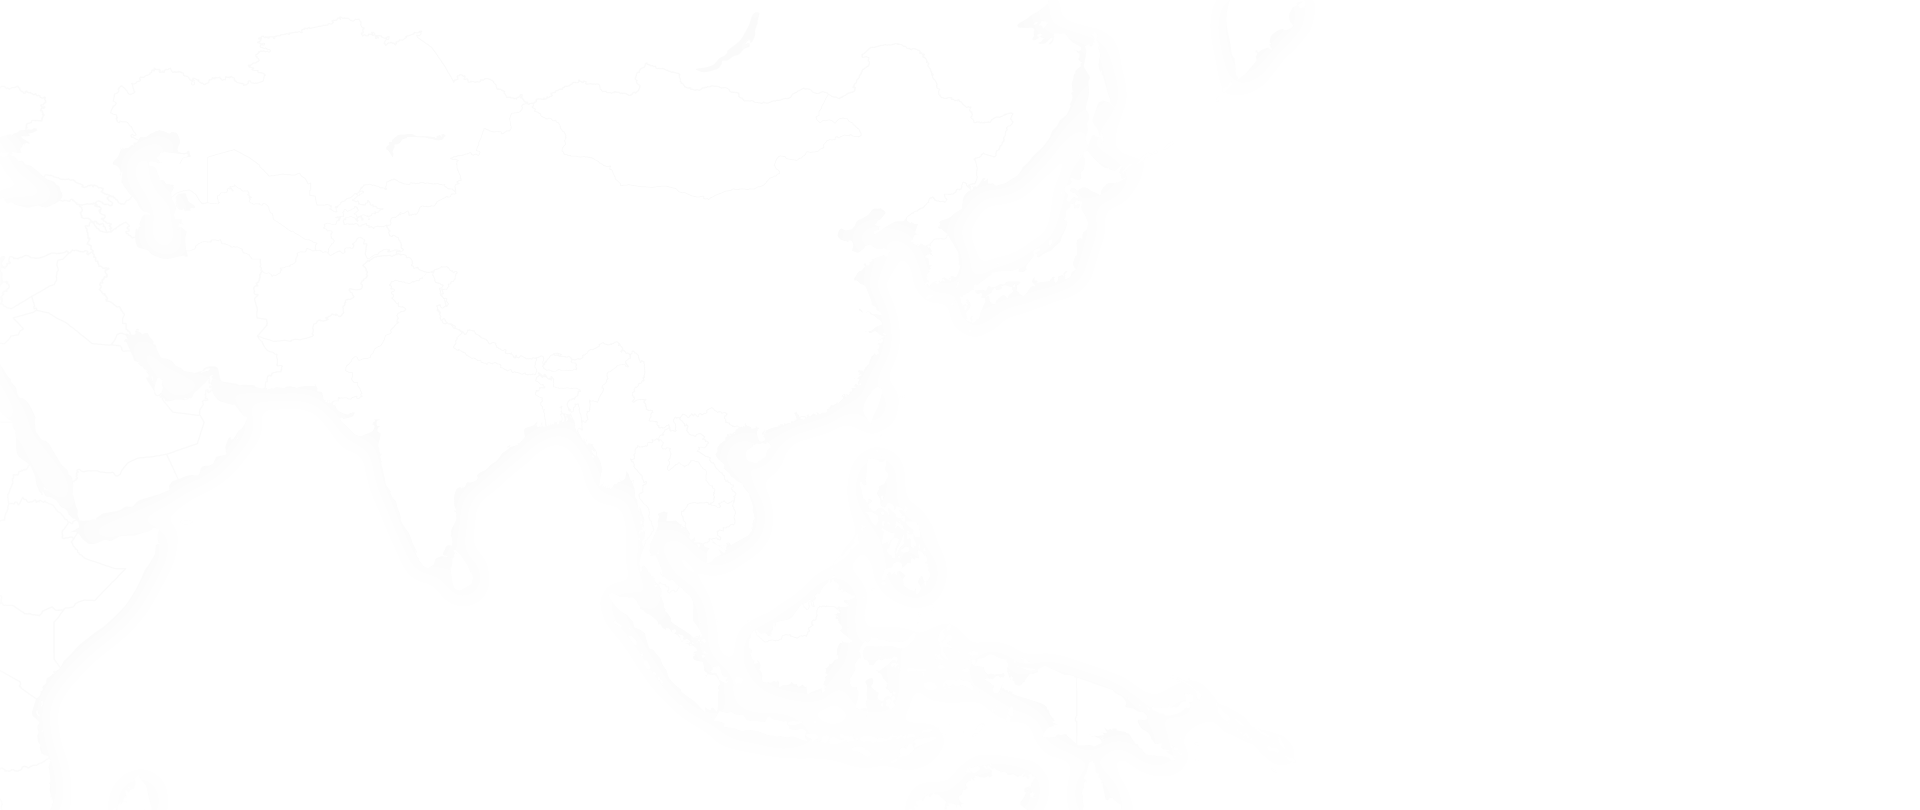 아시아 지도